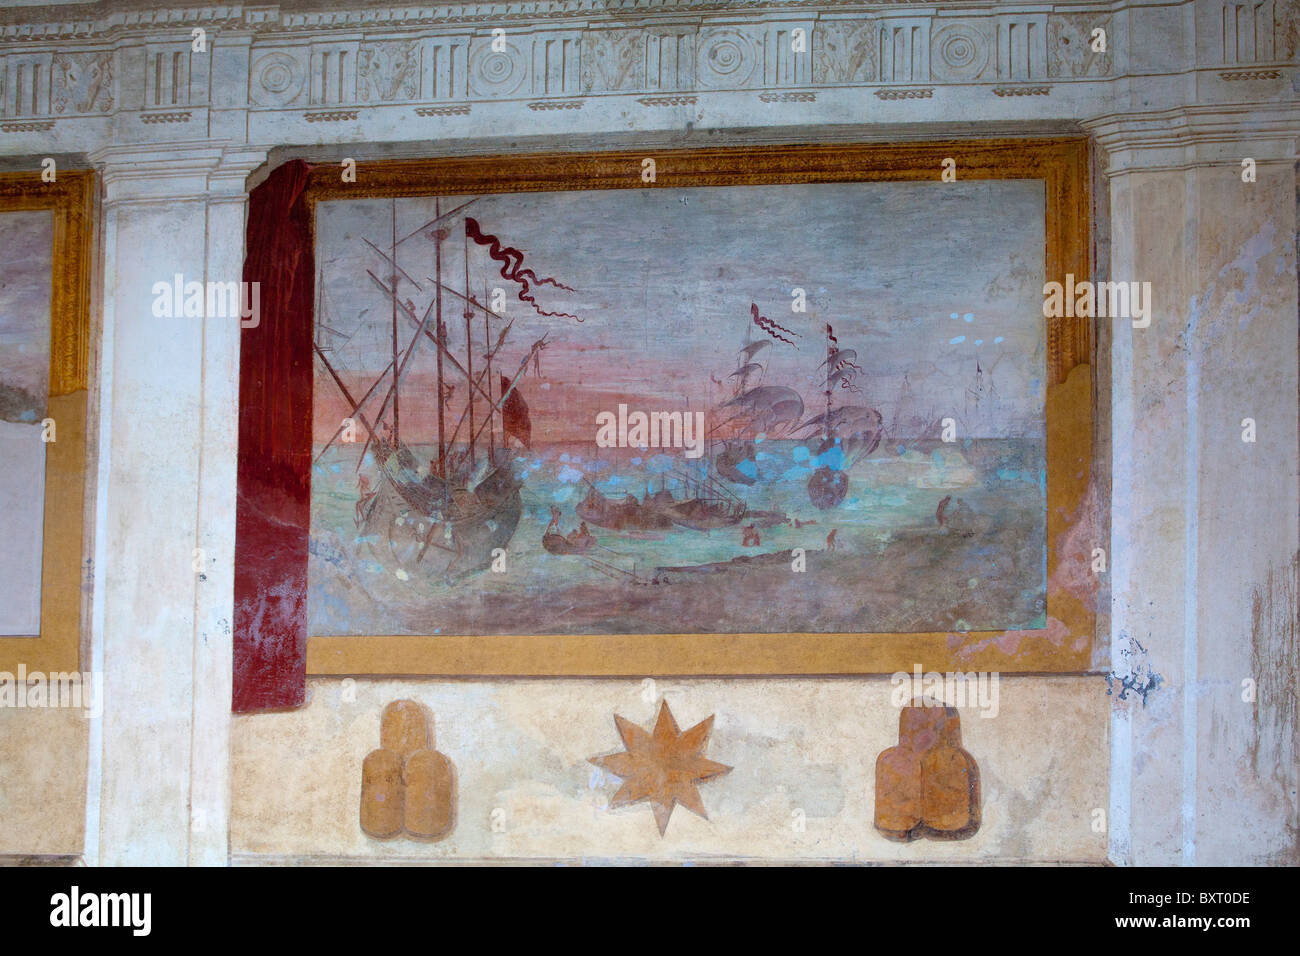 Balcon avec une fresque peinte par Agostino Tassi, Palazzina Montalto, Villa Lante, Viterbo, Latium, Italie Banque D'Images